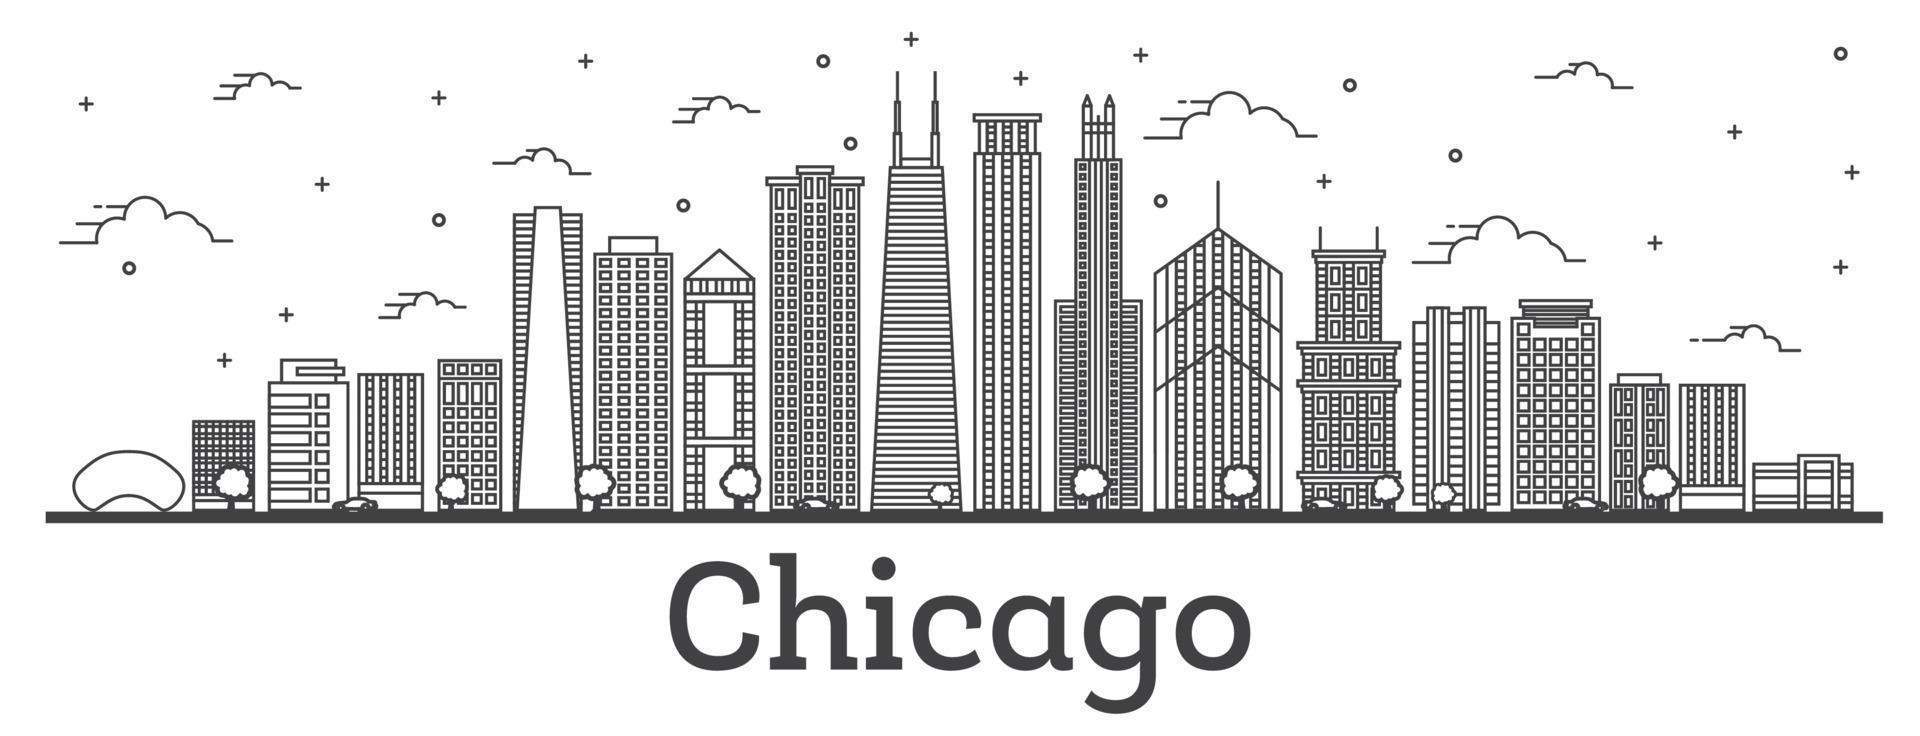 contours de la ville de chicago illinois avec des bâtiments modernes isolés sur blanc. vecteur